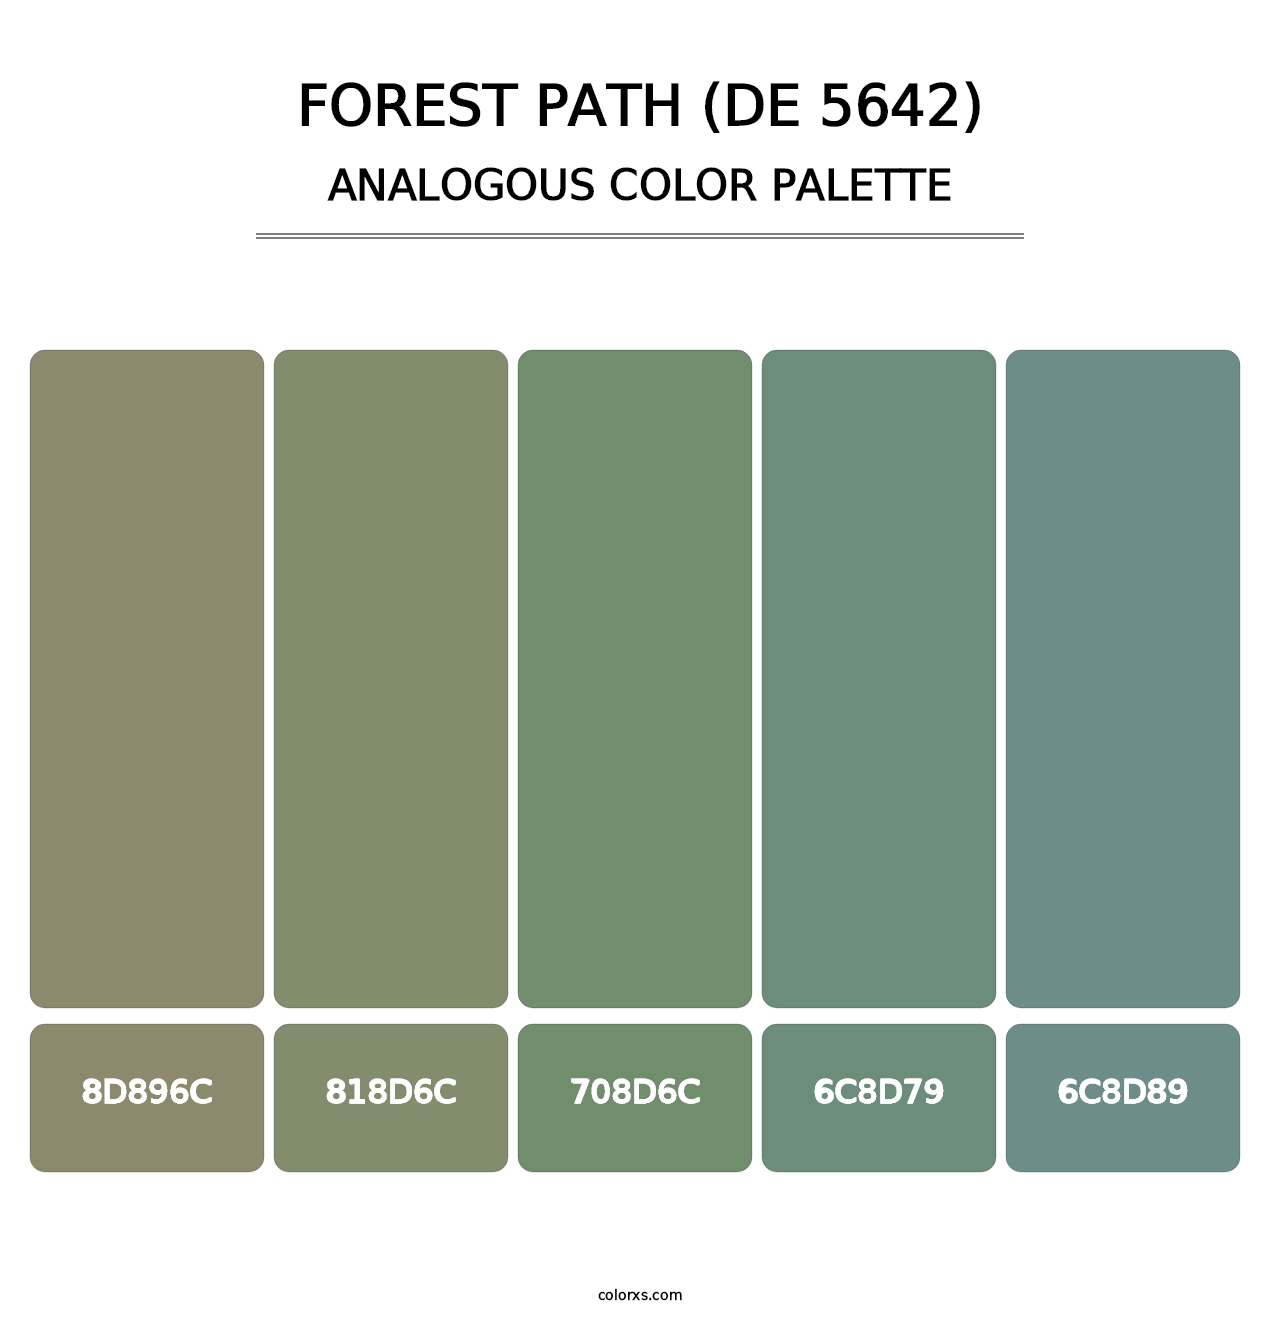 Forest Path (DE 5642) - Analogous Color Palette